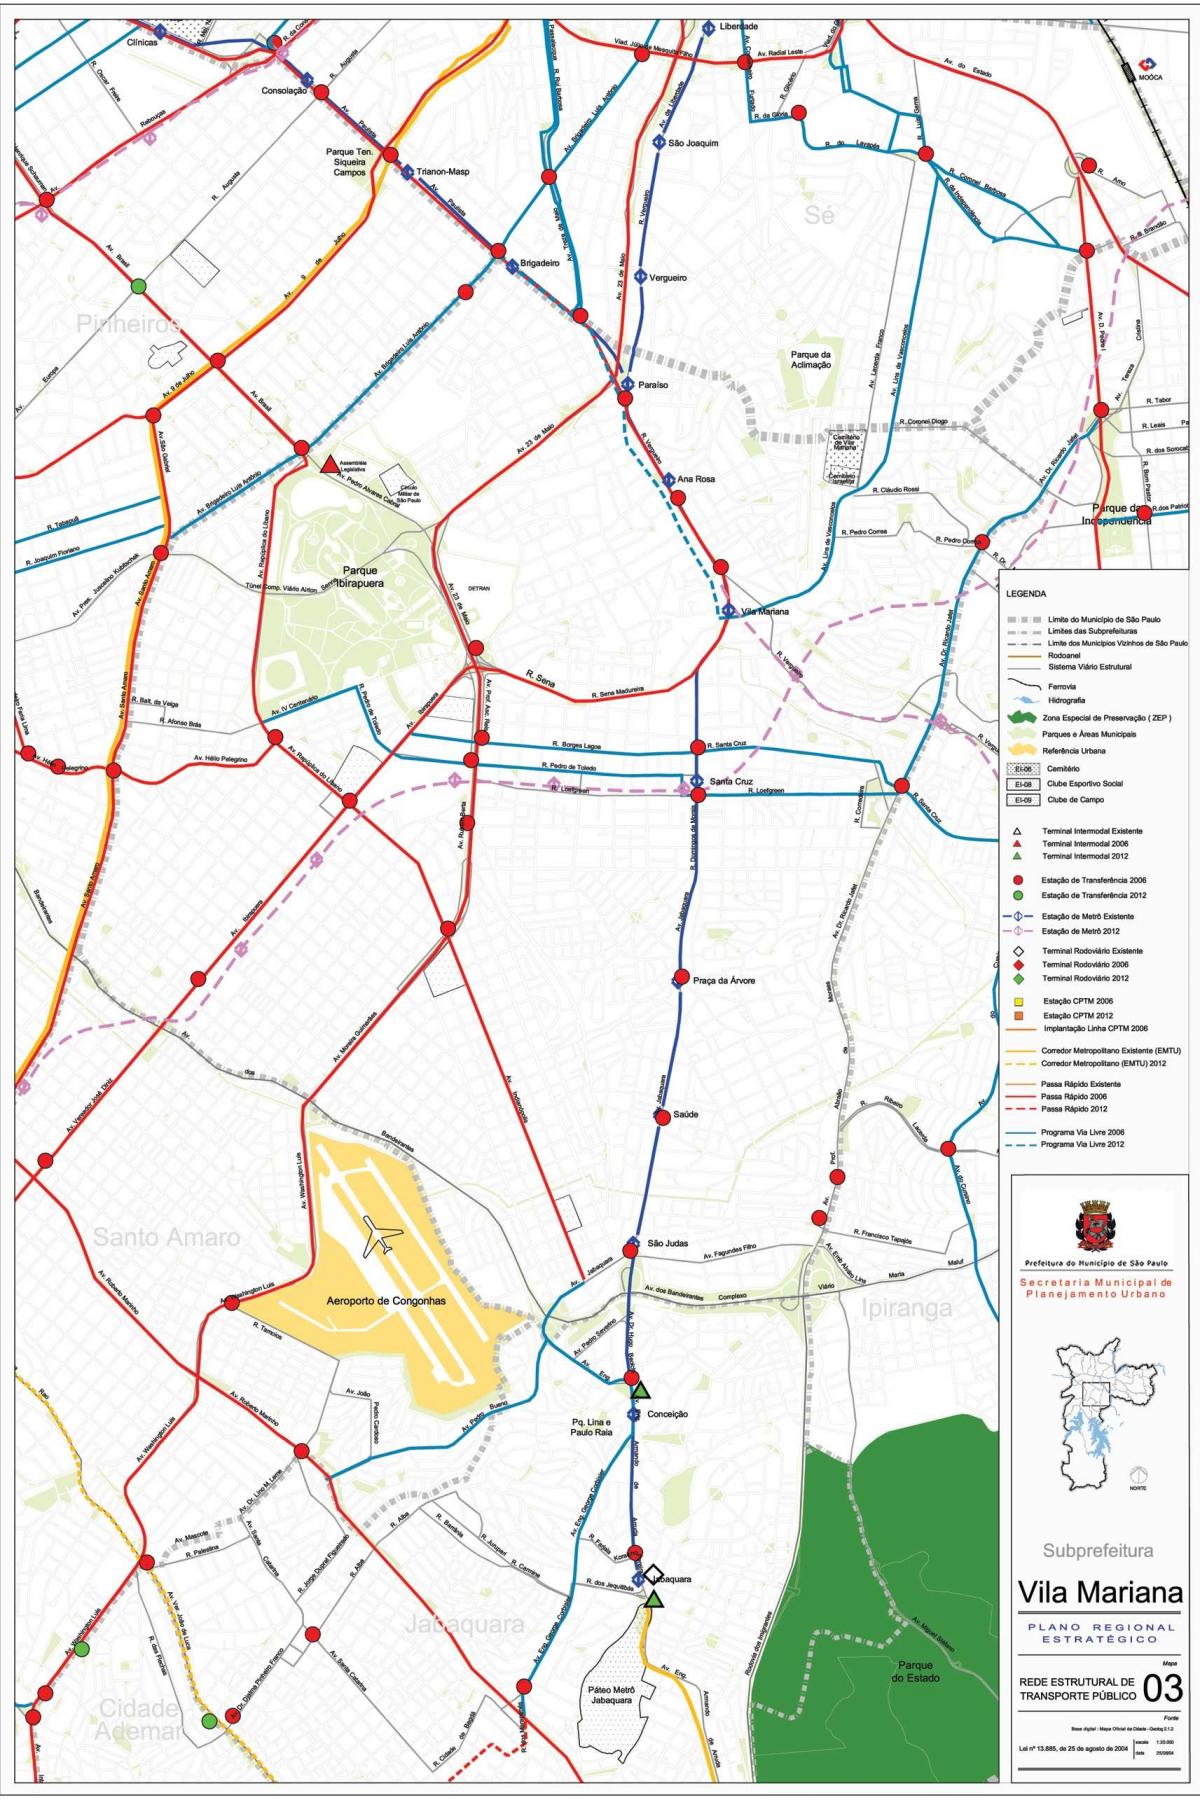 Karte von Vila Mariana, São Paulo - Öffentliche Verkehrsmittel